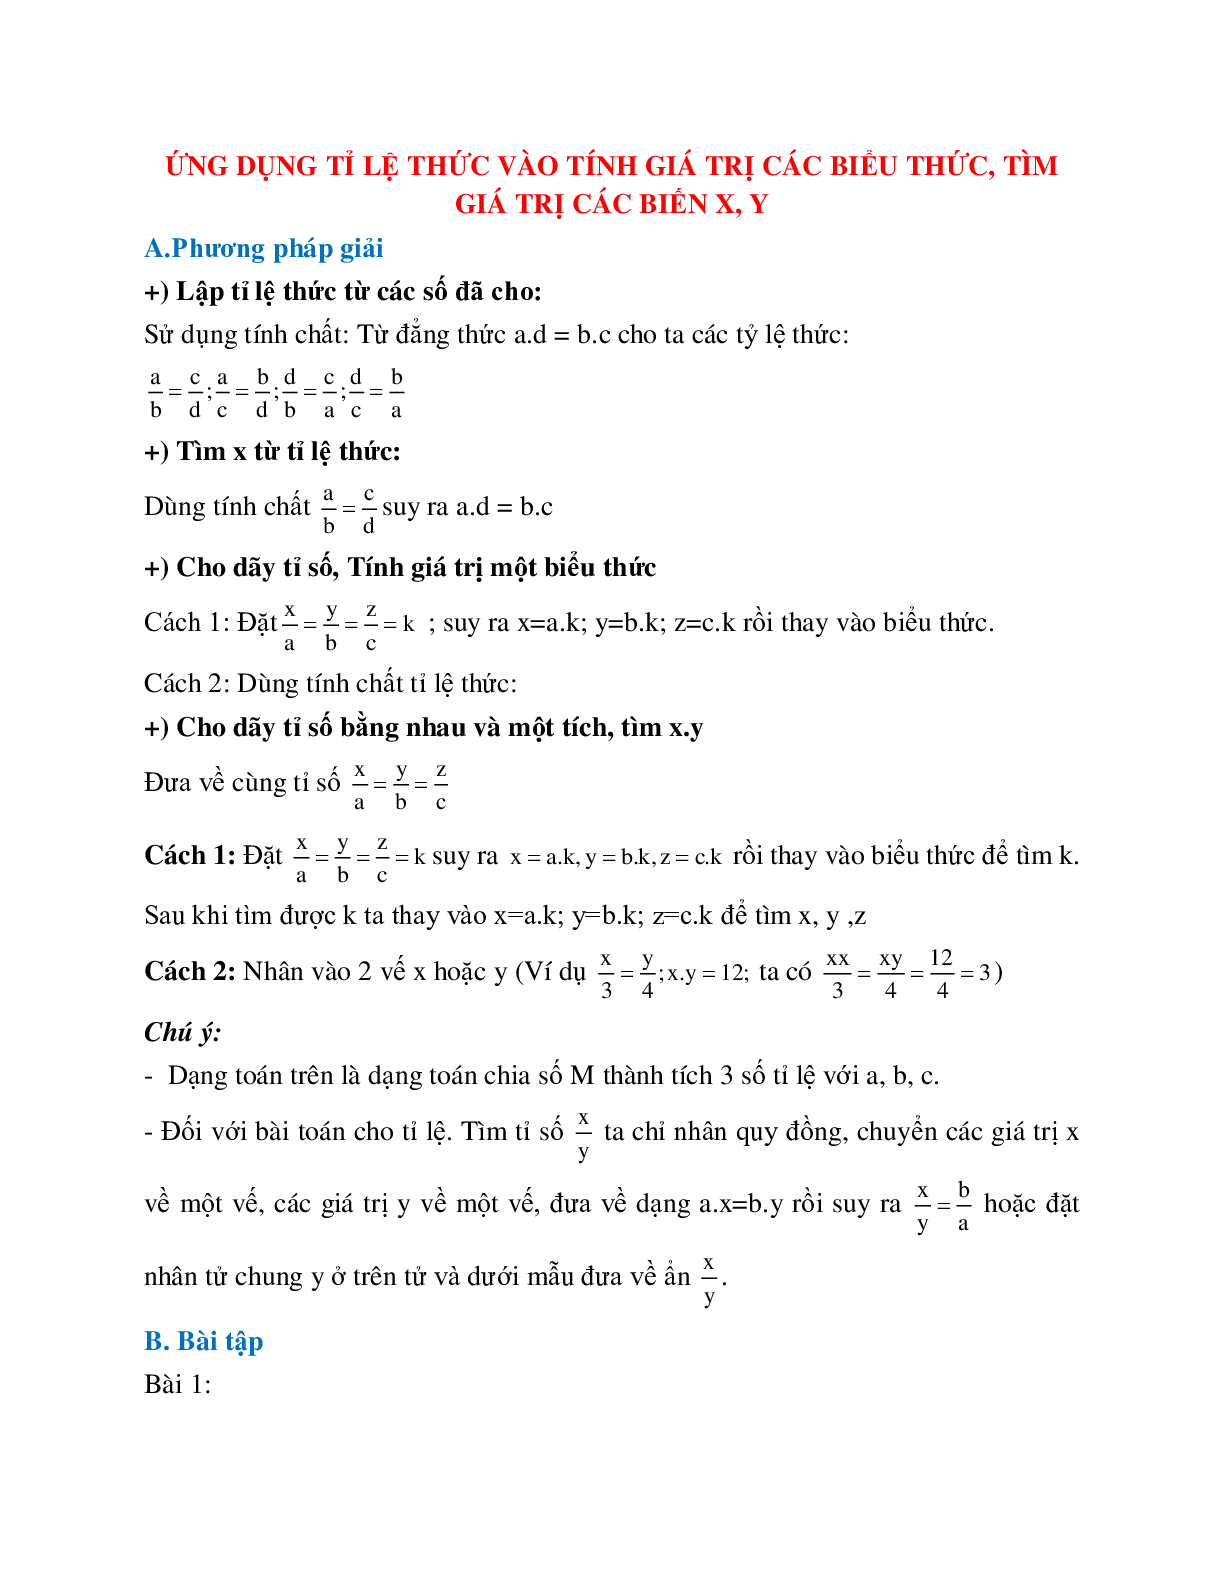 Cách giải Ứng dụng tỉ lệ thức vào tính giá trị các biểu thức, tìm giá trị các biến x,y (trang 1)